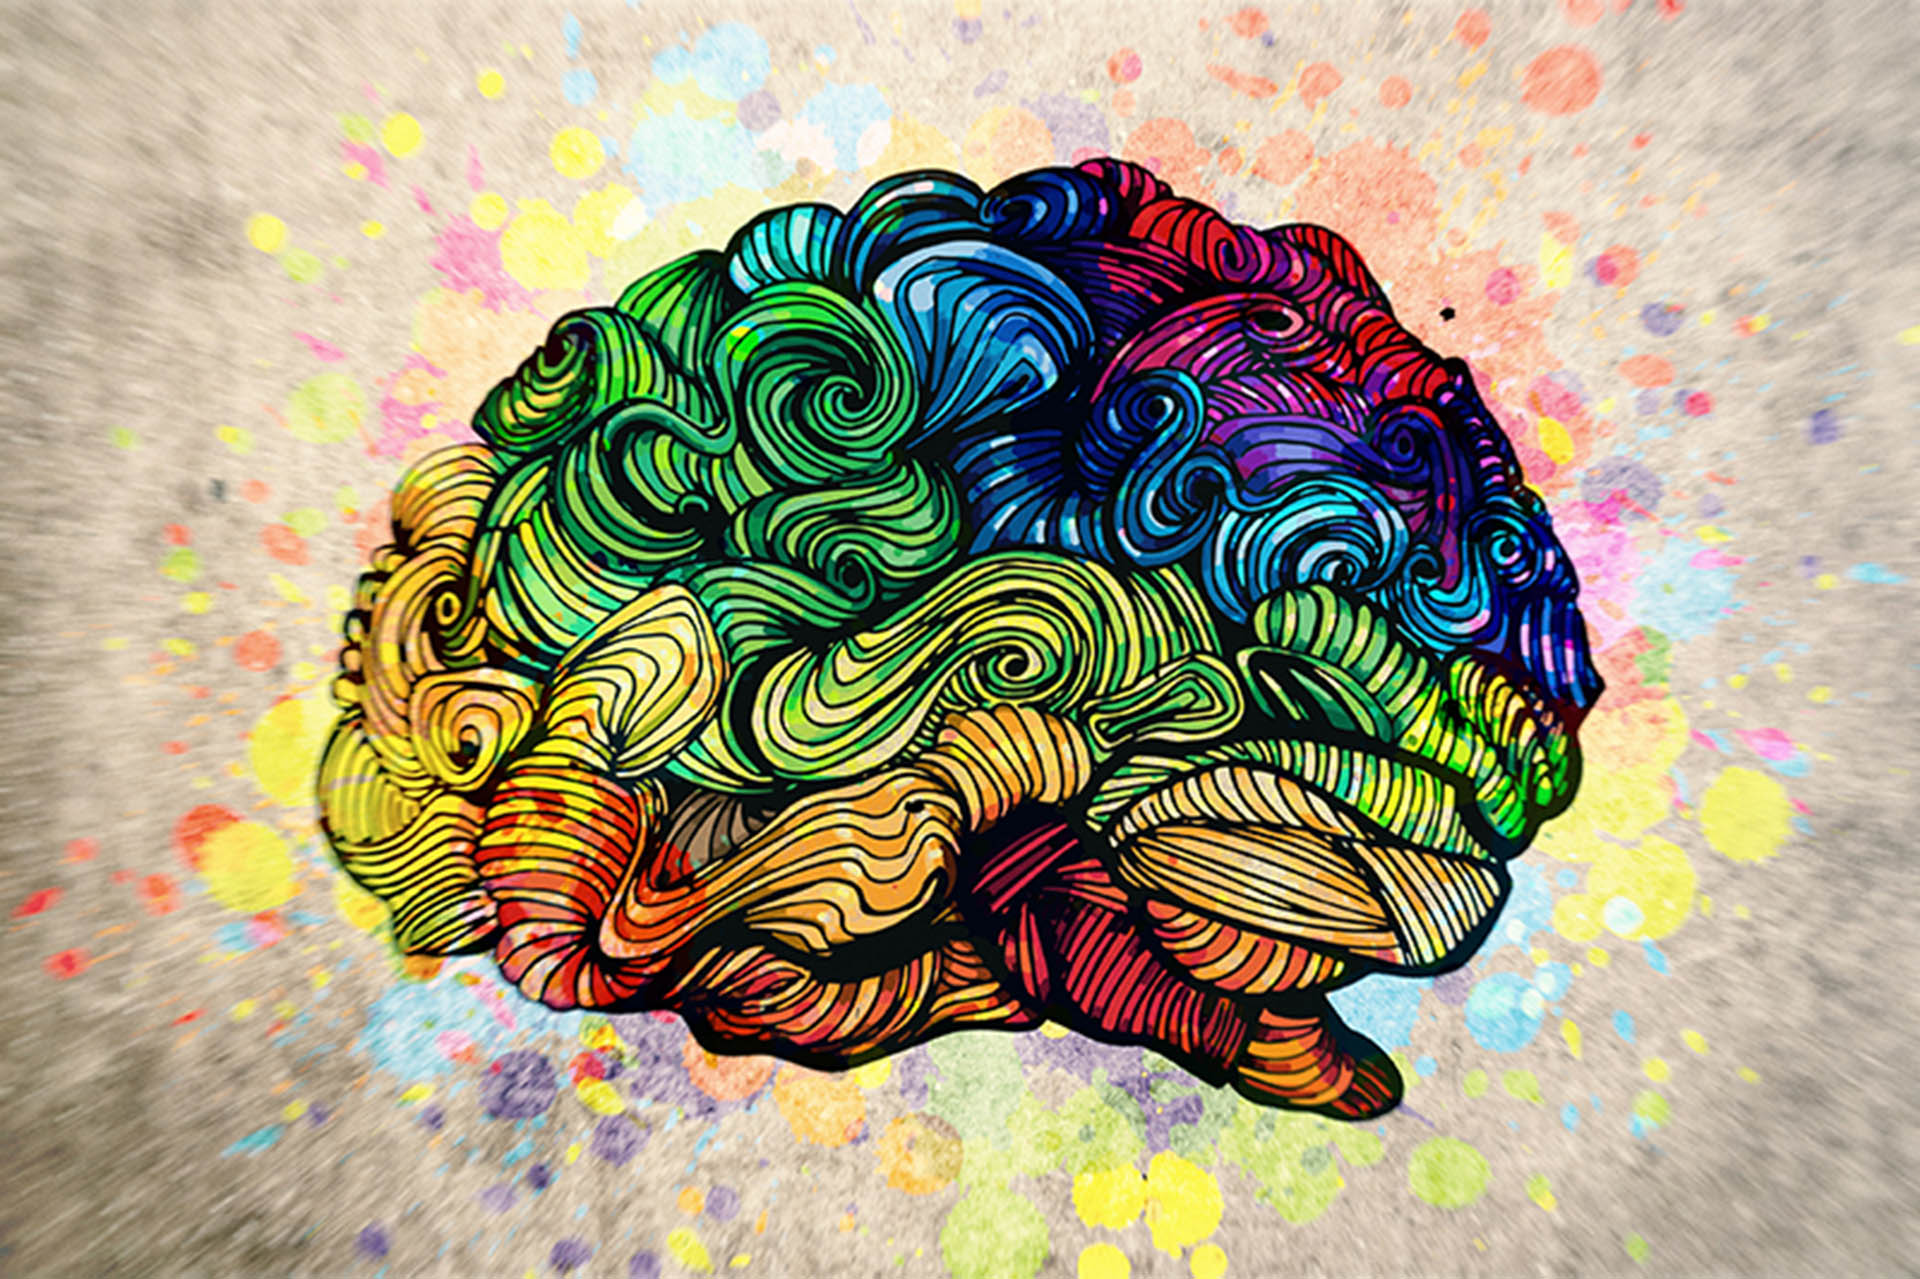 ζωγραφιά που απεικονίζει πολύχρωμο εγκέφαλο με διαταραχή μετατραυματικού στρές